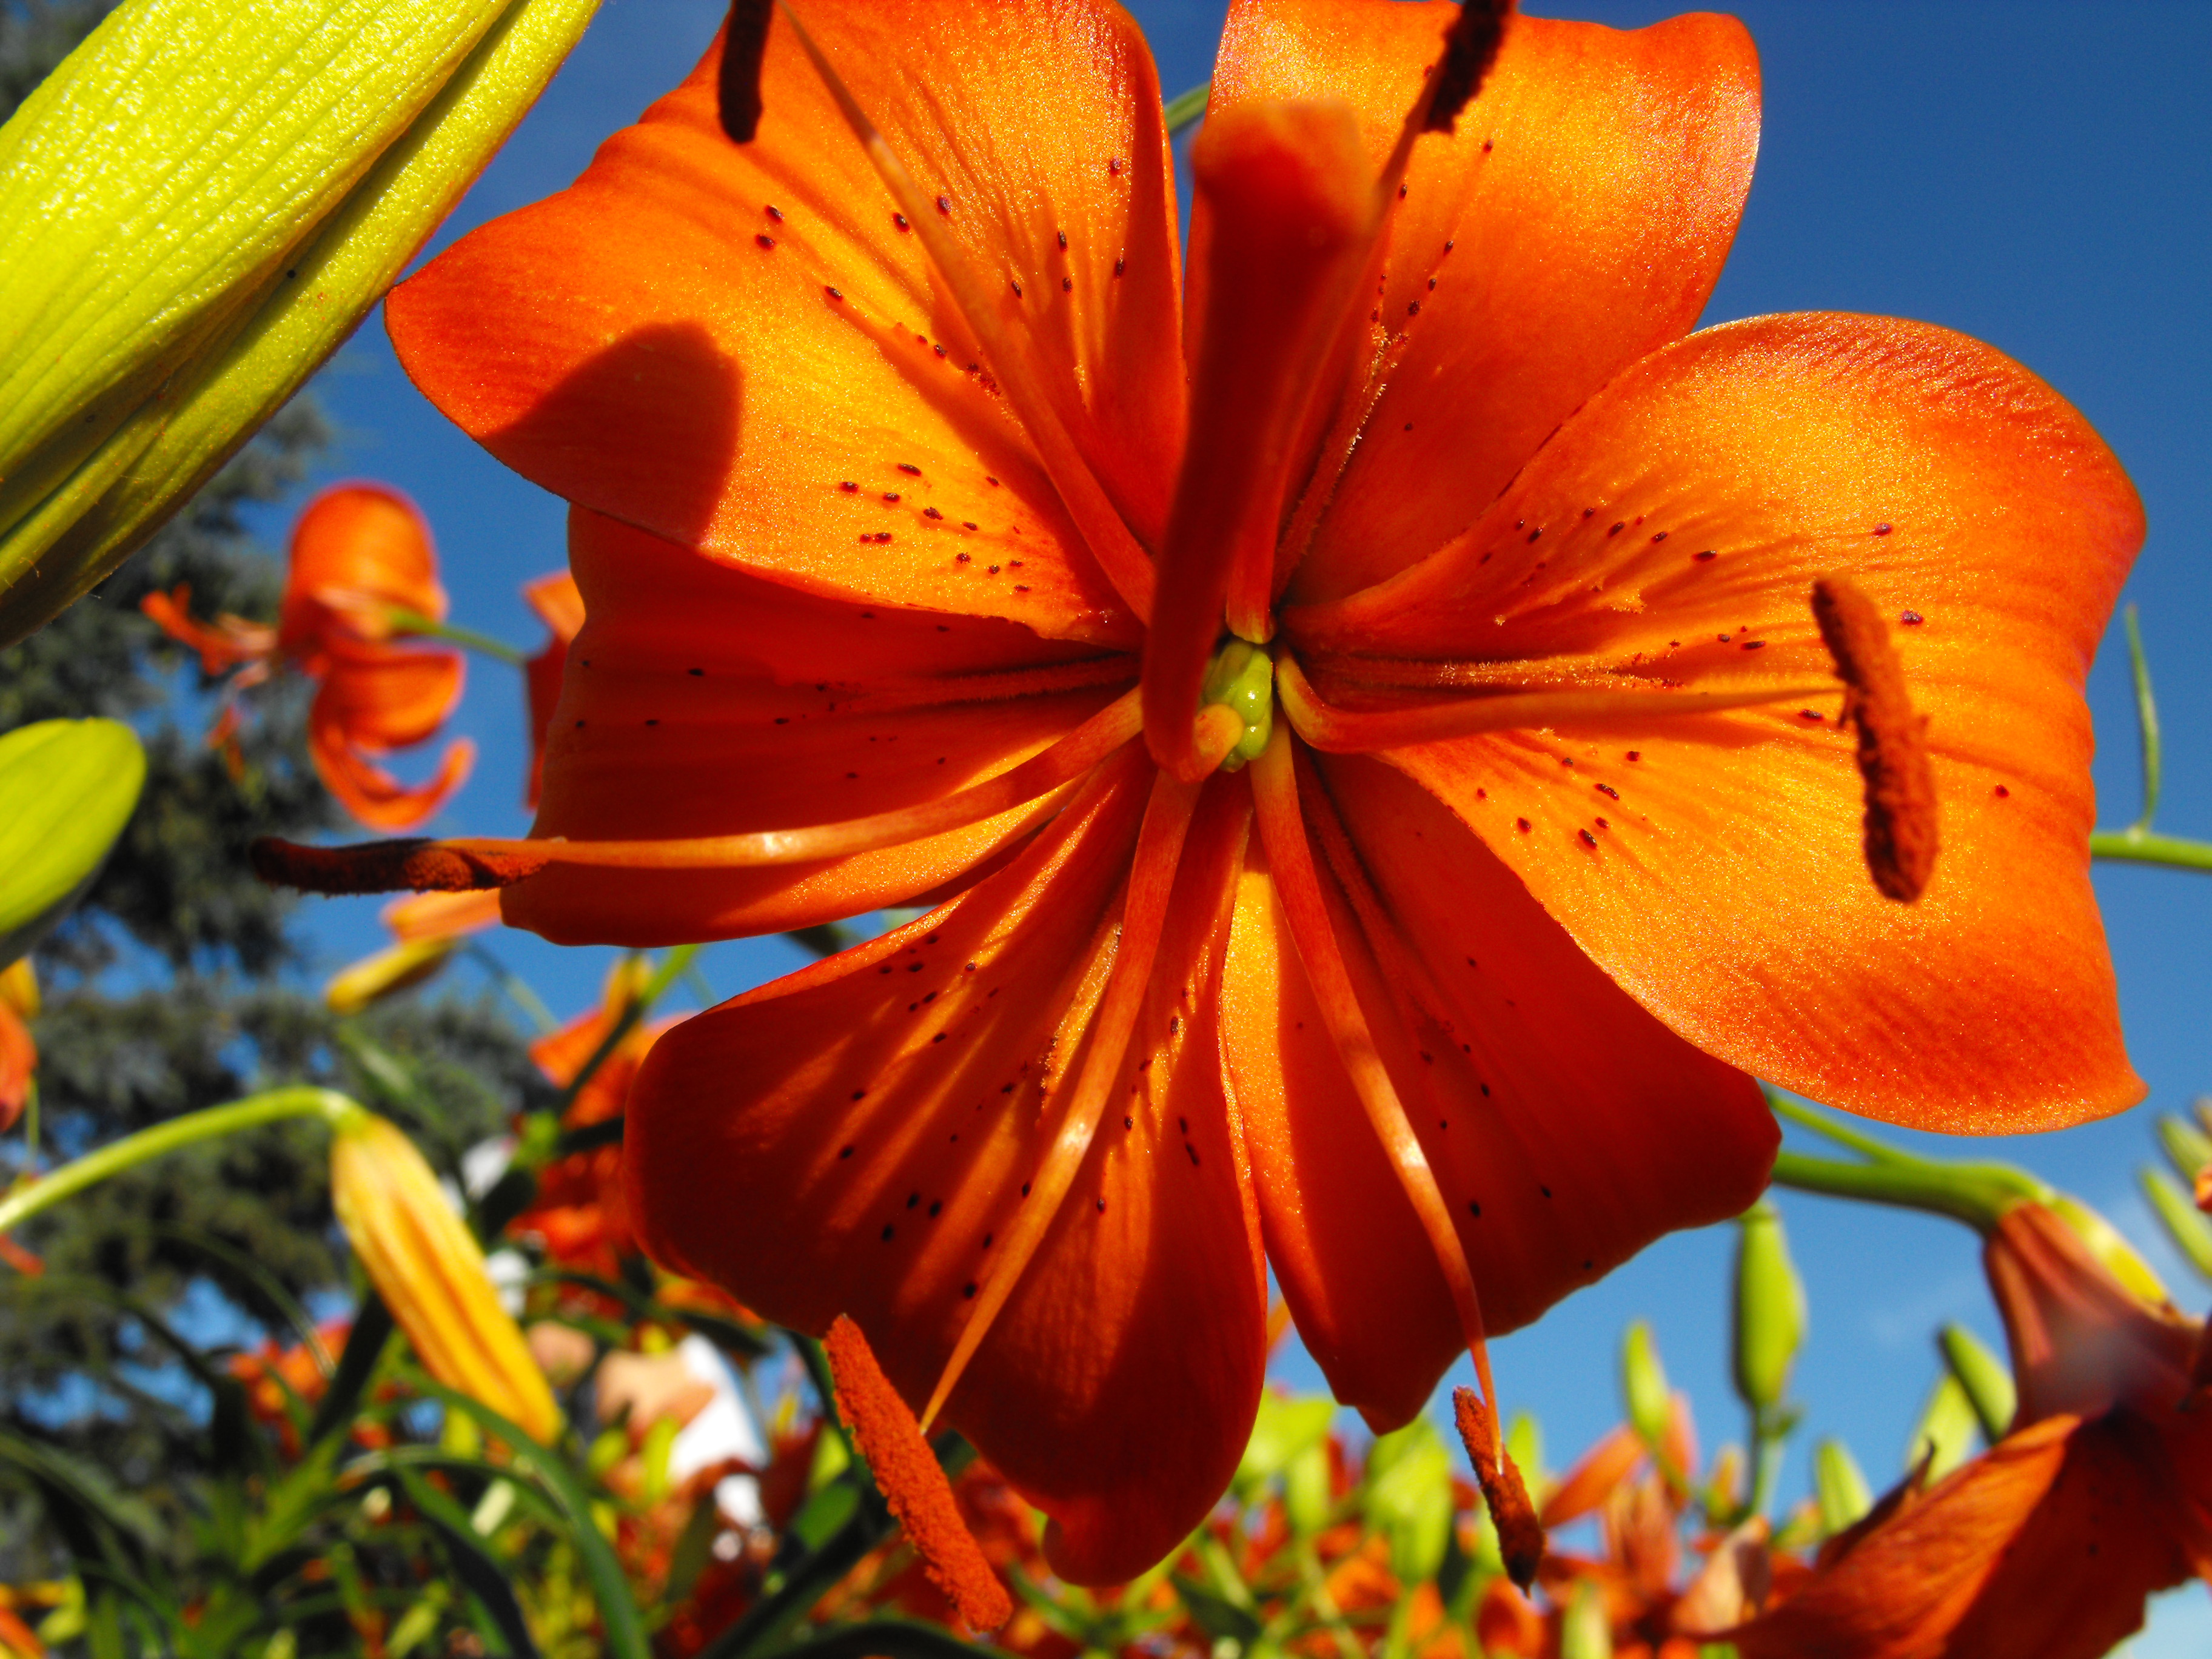 Orange flower photo